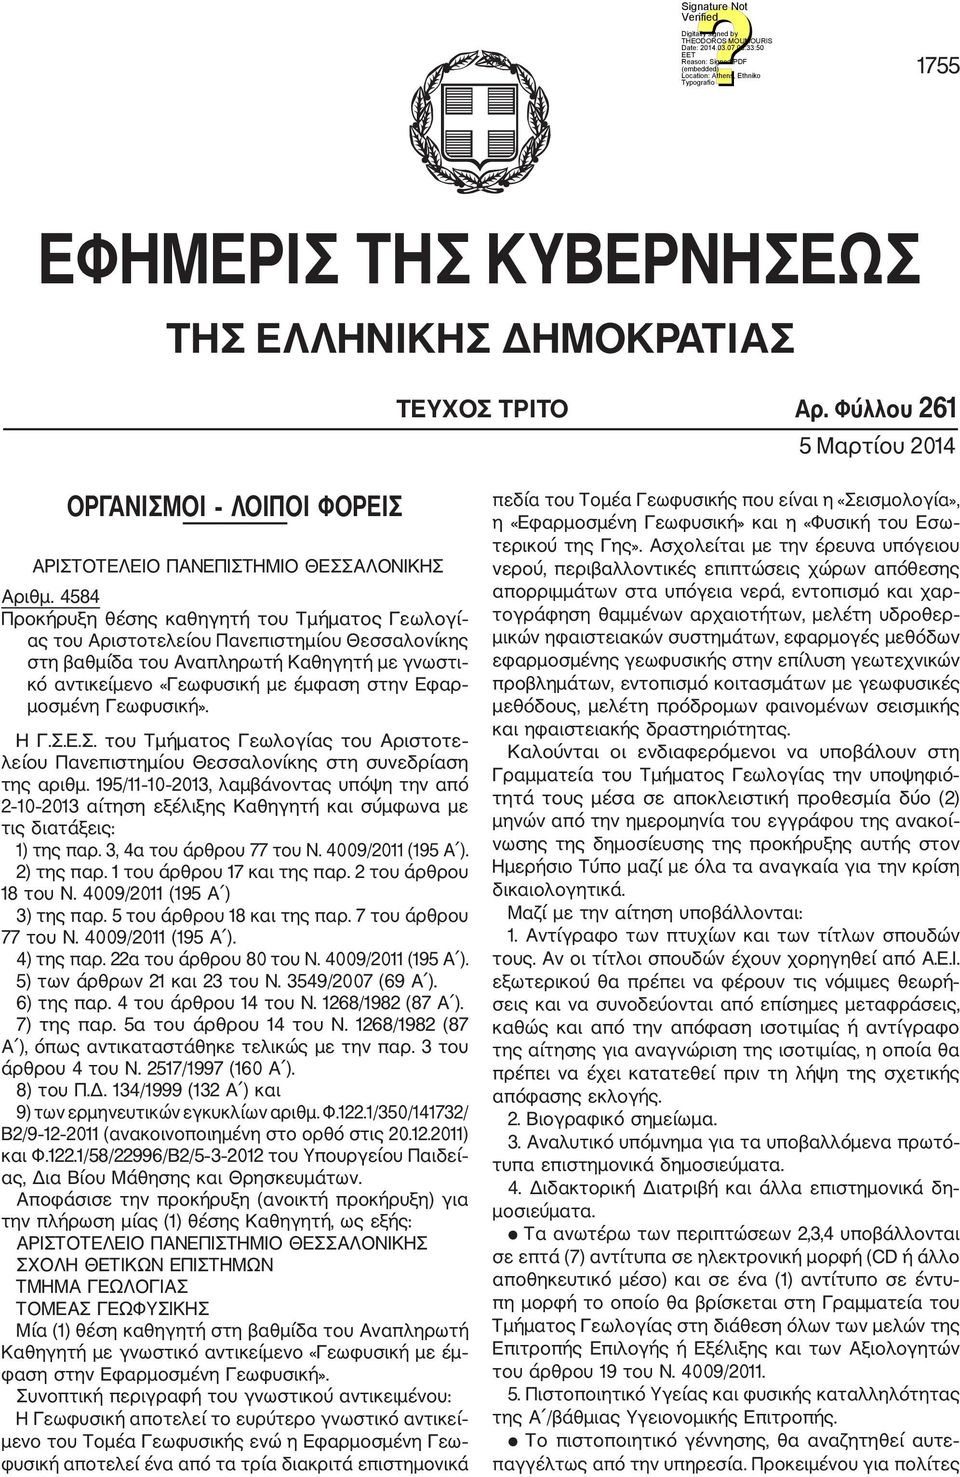 Γεωφυσική». Η Γ.Σ.Ε.Σ. του Τμήματος Γεωλογίας του Αριστοτε λείου Πανεπιστημίου Θεσσαλονίκης στη συνεδρίαση της αριθμ.